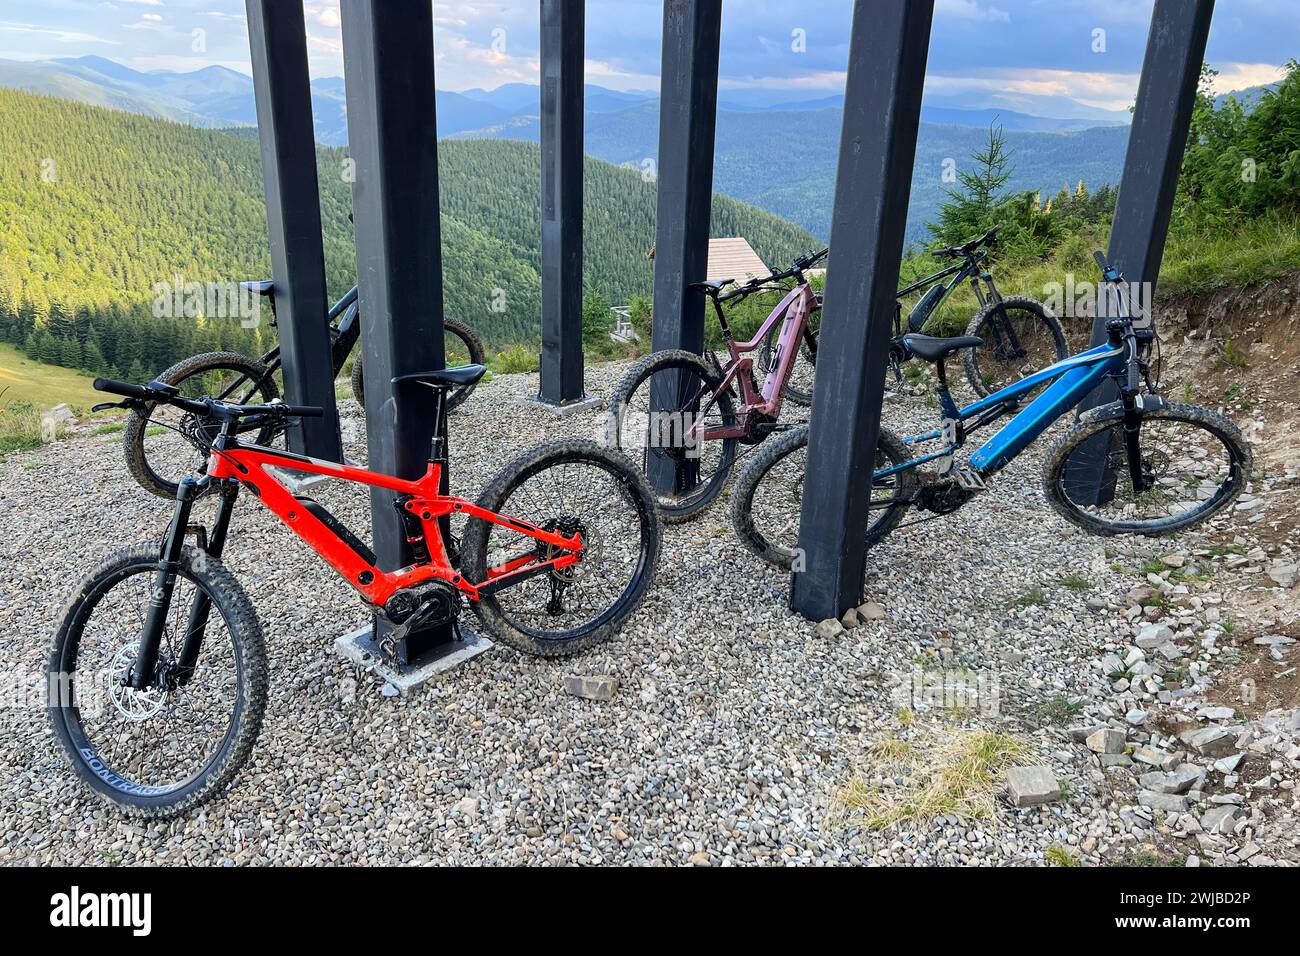 Collezione di mountain bike elettriche parcheggiate su un terreno coperto di ghiaia in montagna. Le biciclette da MTB sono collocate sotto una struttura con spessi montanti neri. Foto Stock